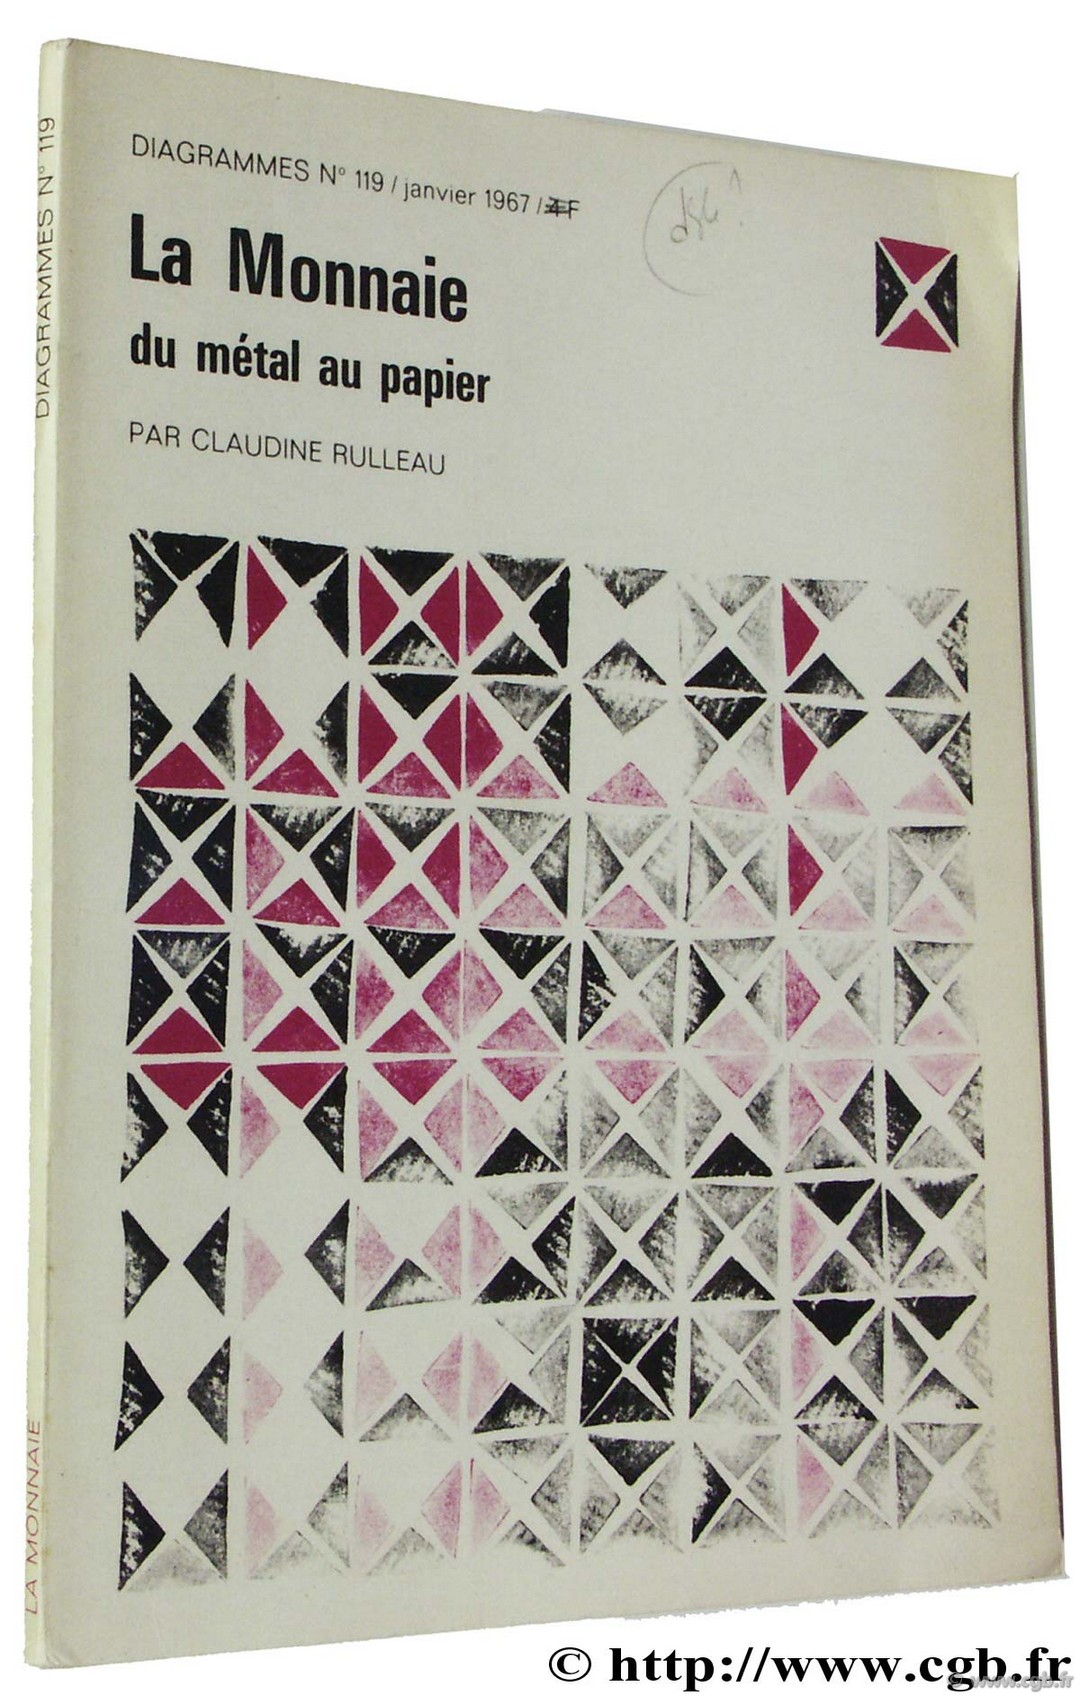 La Monnaie du métal au papier, Diagrammes n° 119 janvier 1967 RULLEAU C.